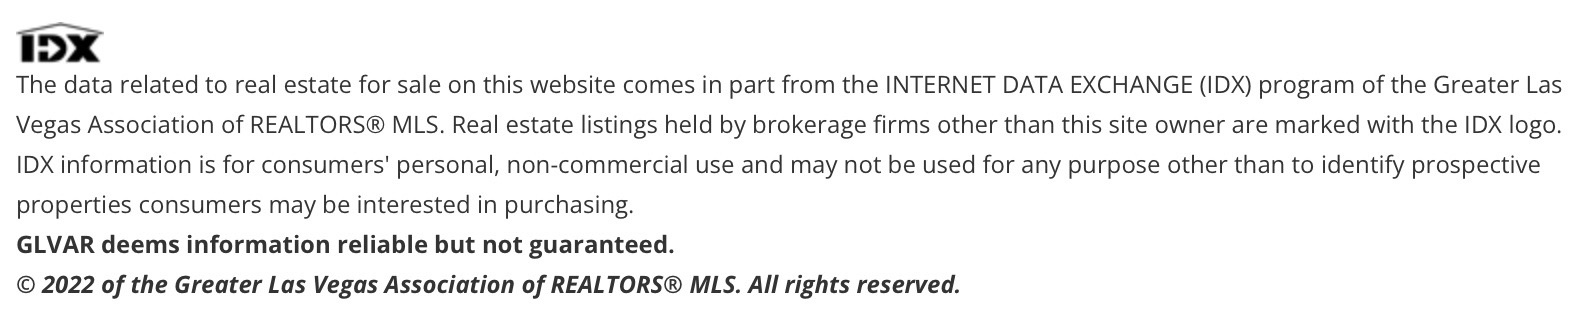 IDX Kurt Grosse disclaimer for MLS